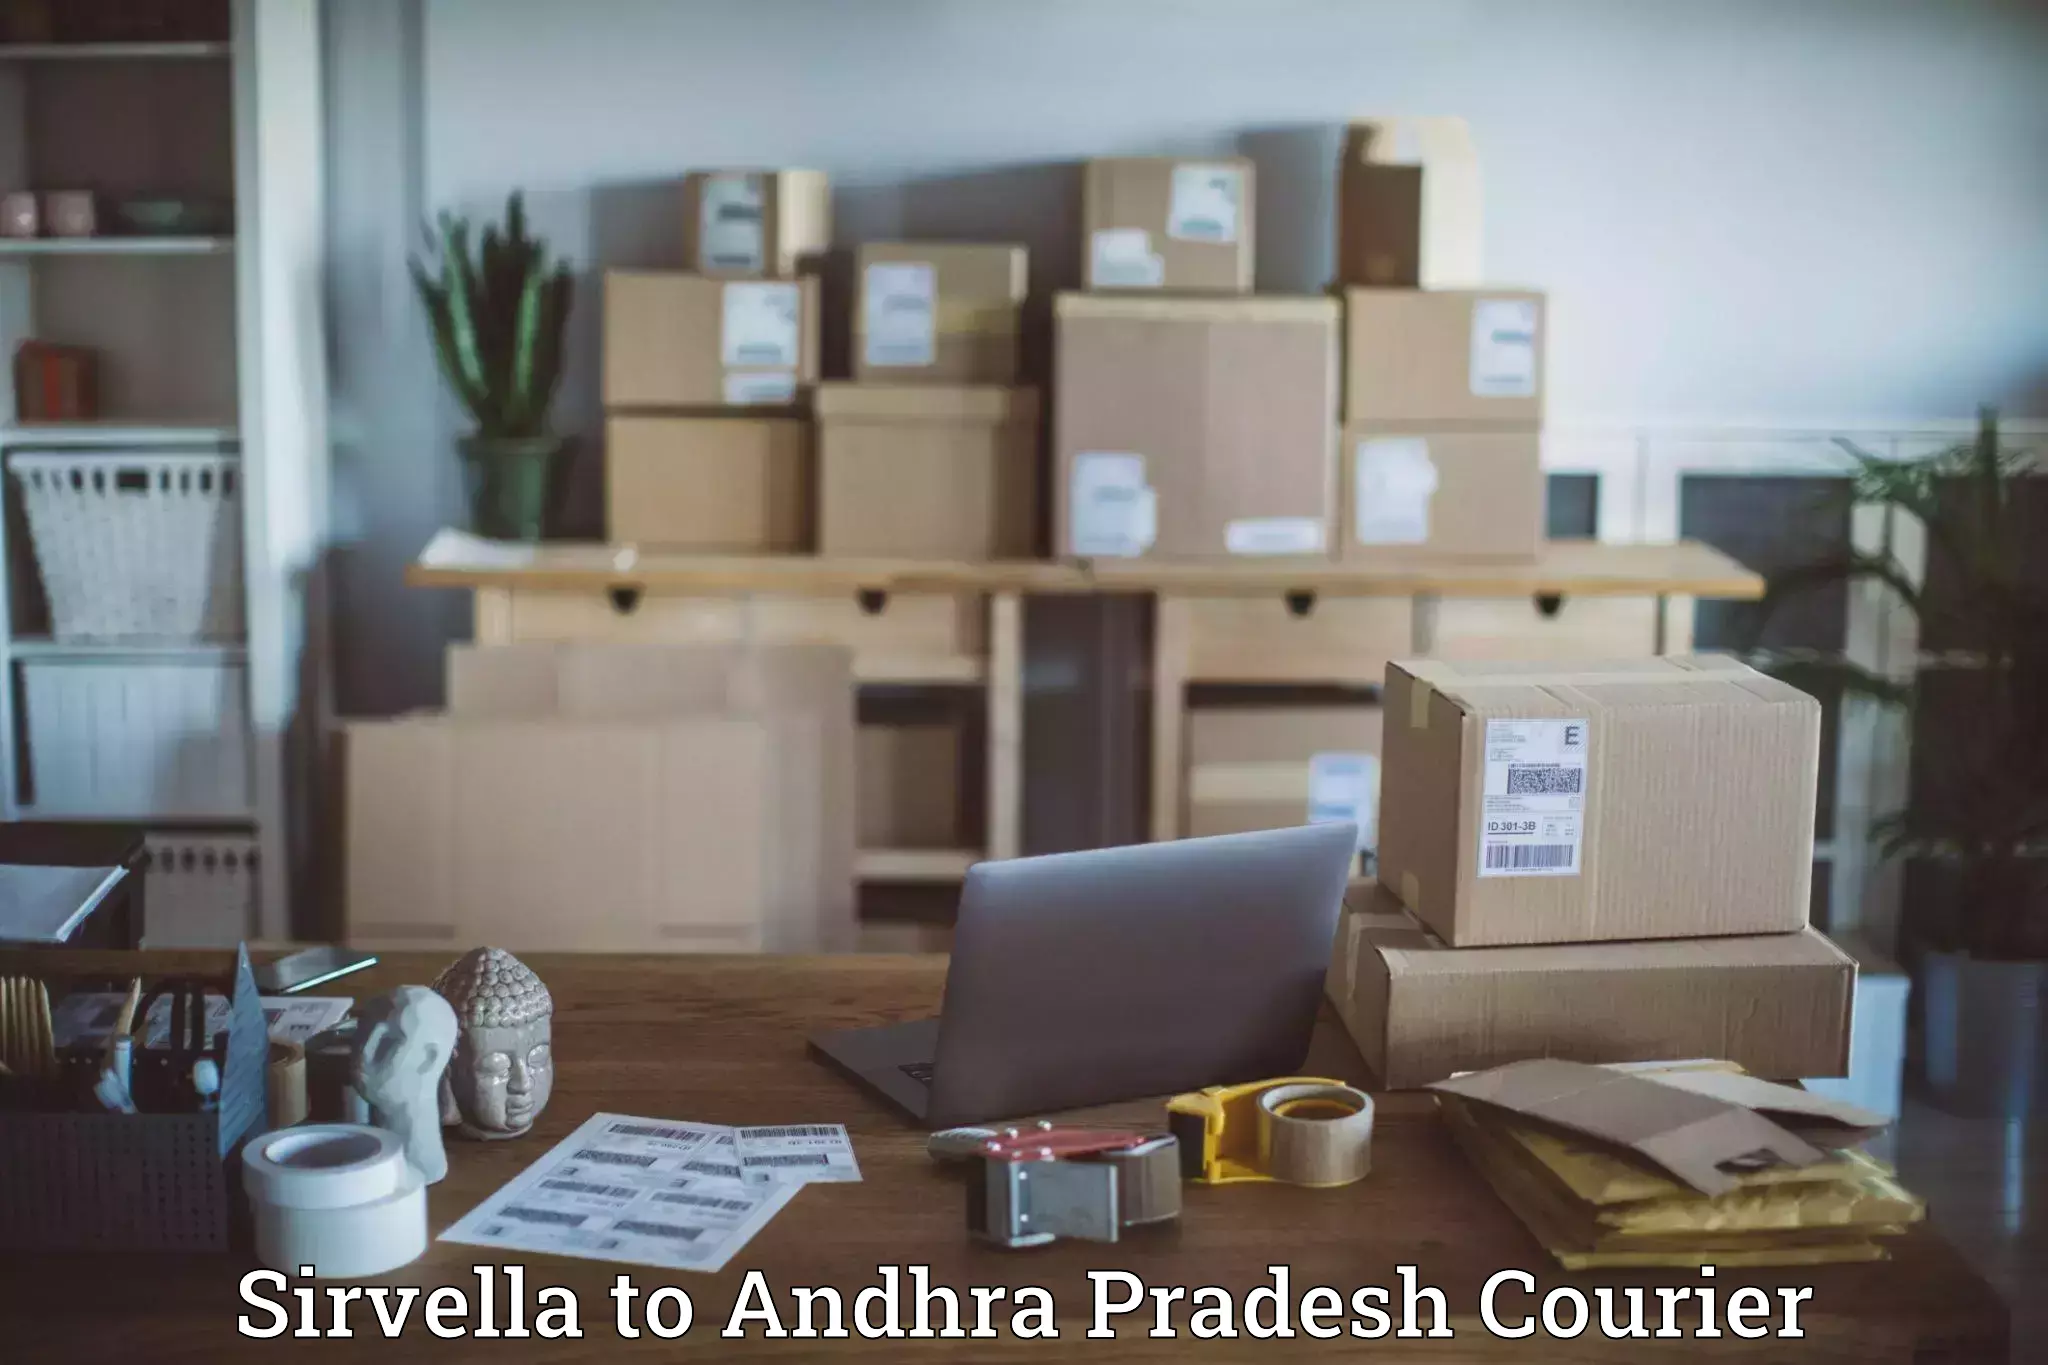 Courier service comparison Sirvella to IIT Tirupati